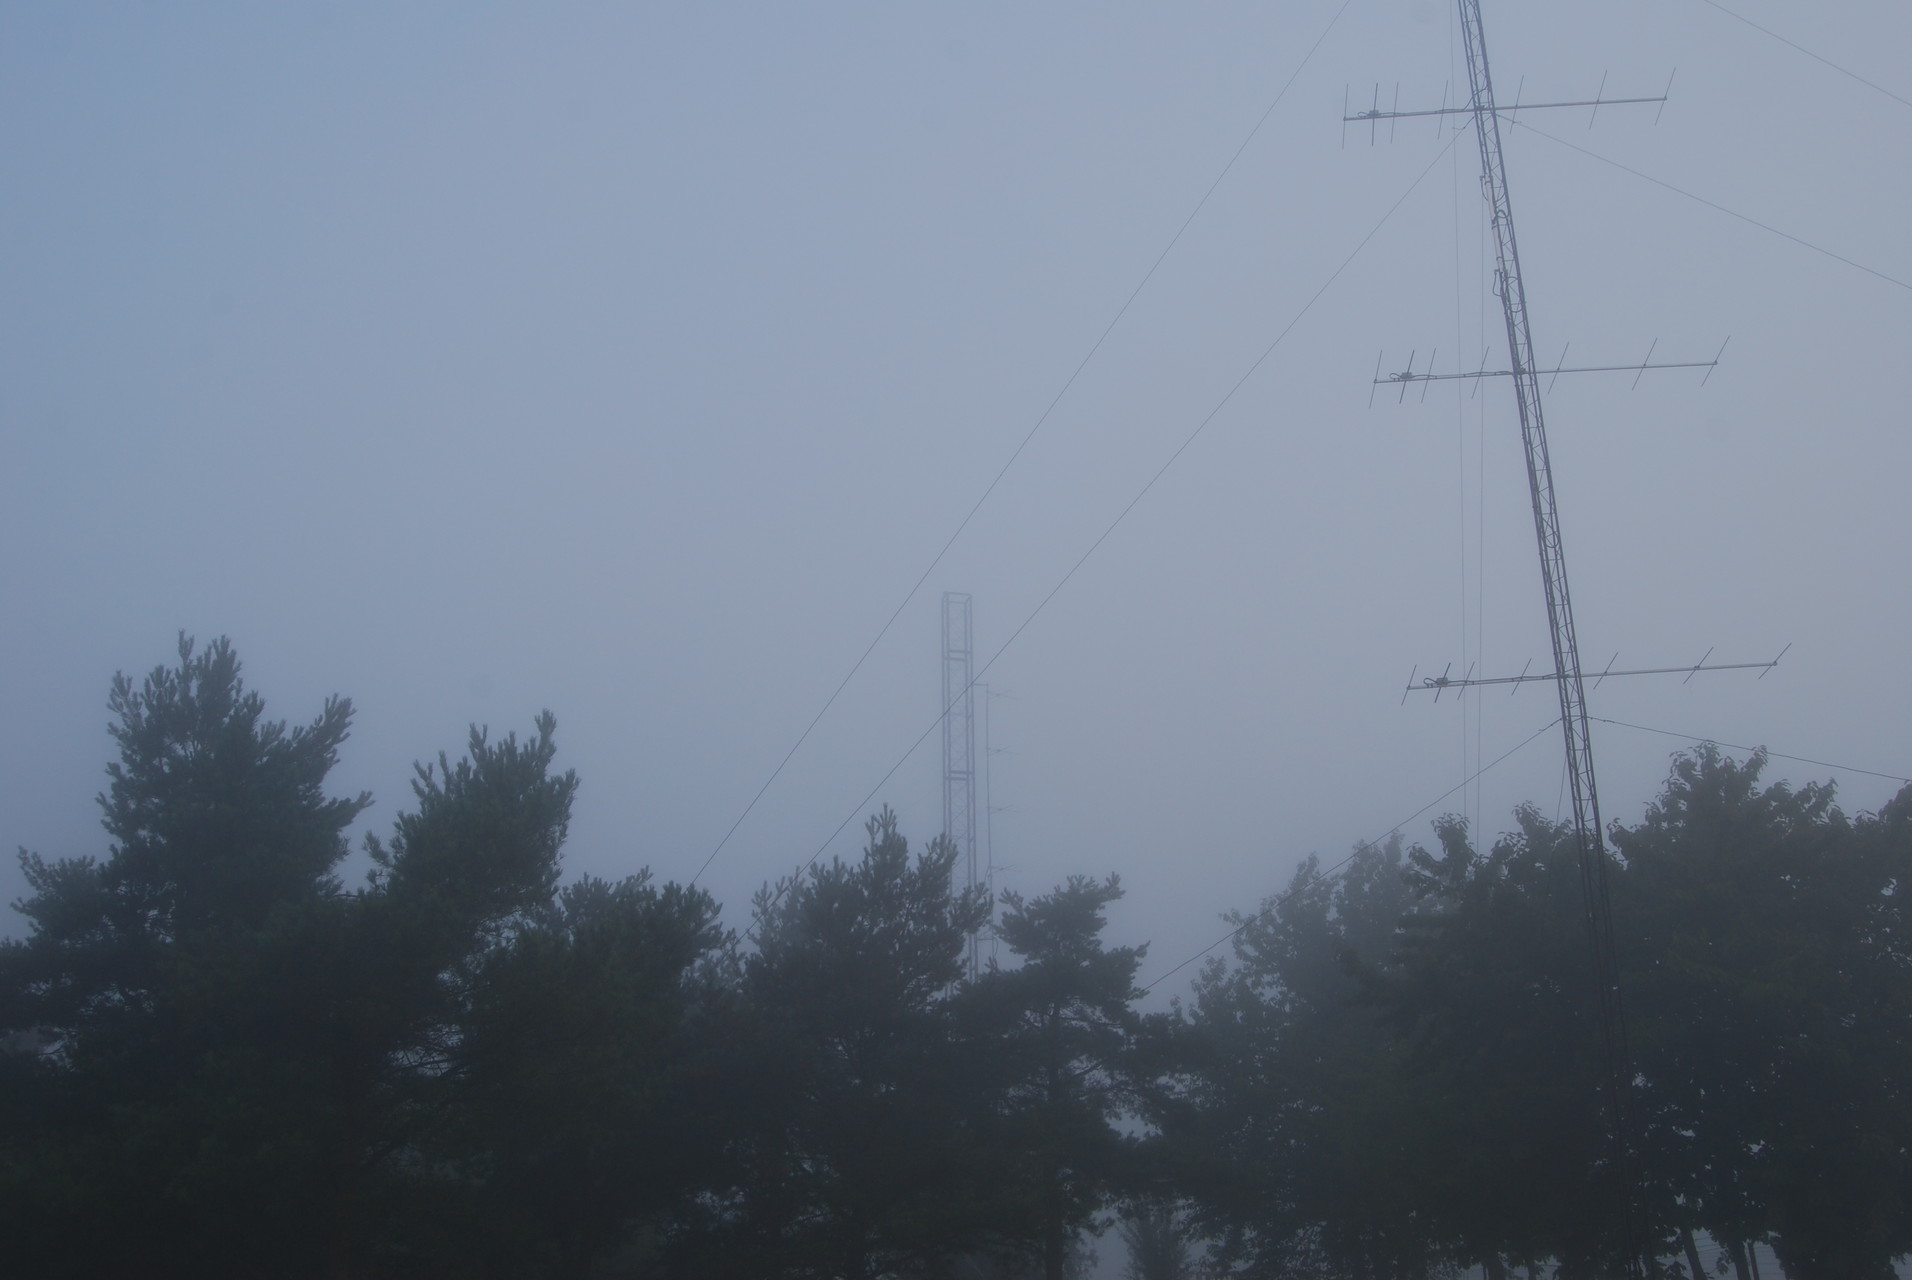 Sunday morning with fog